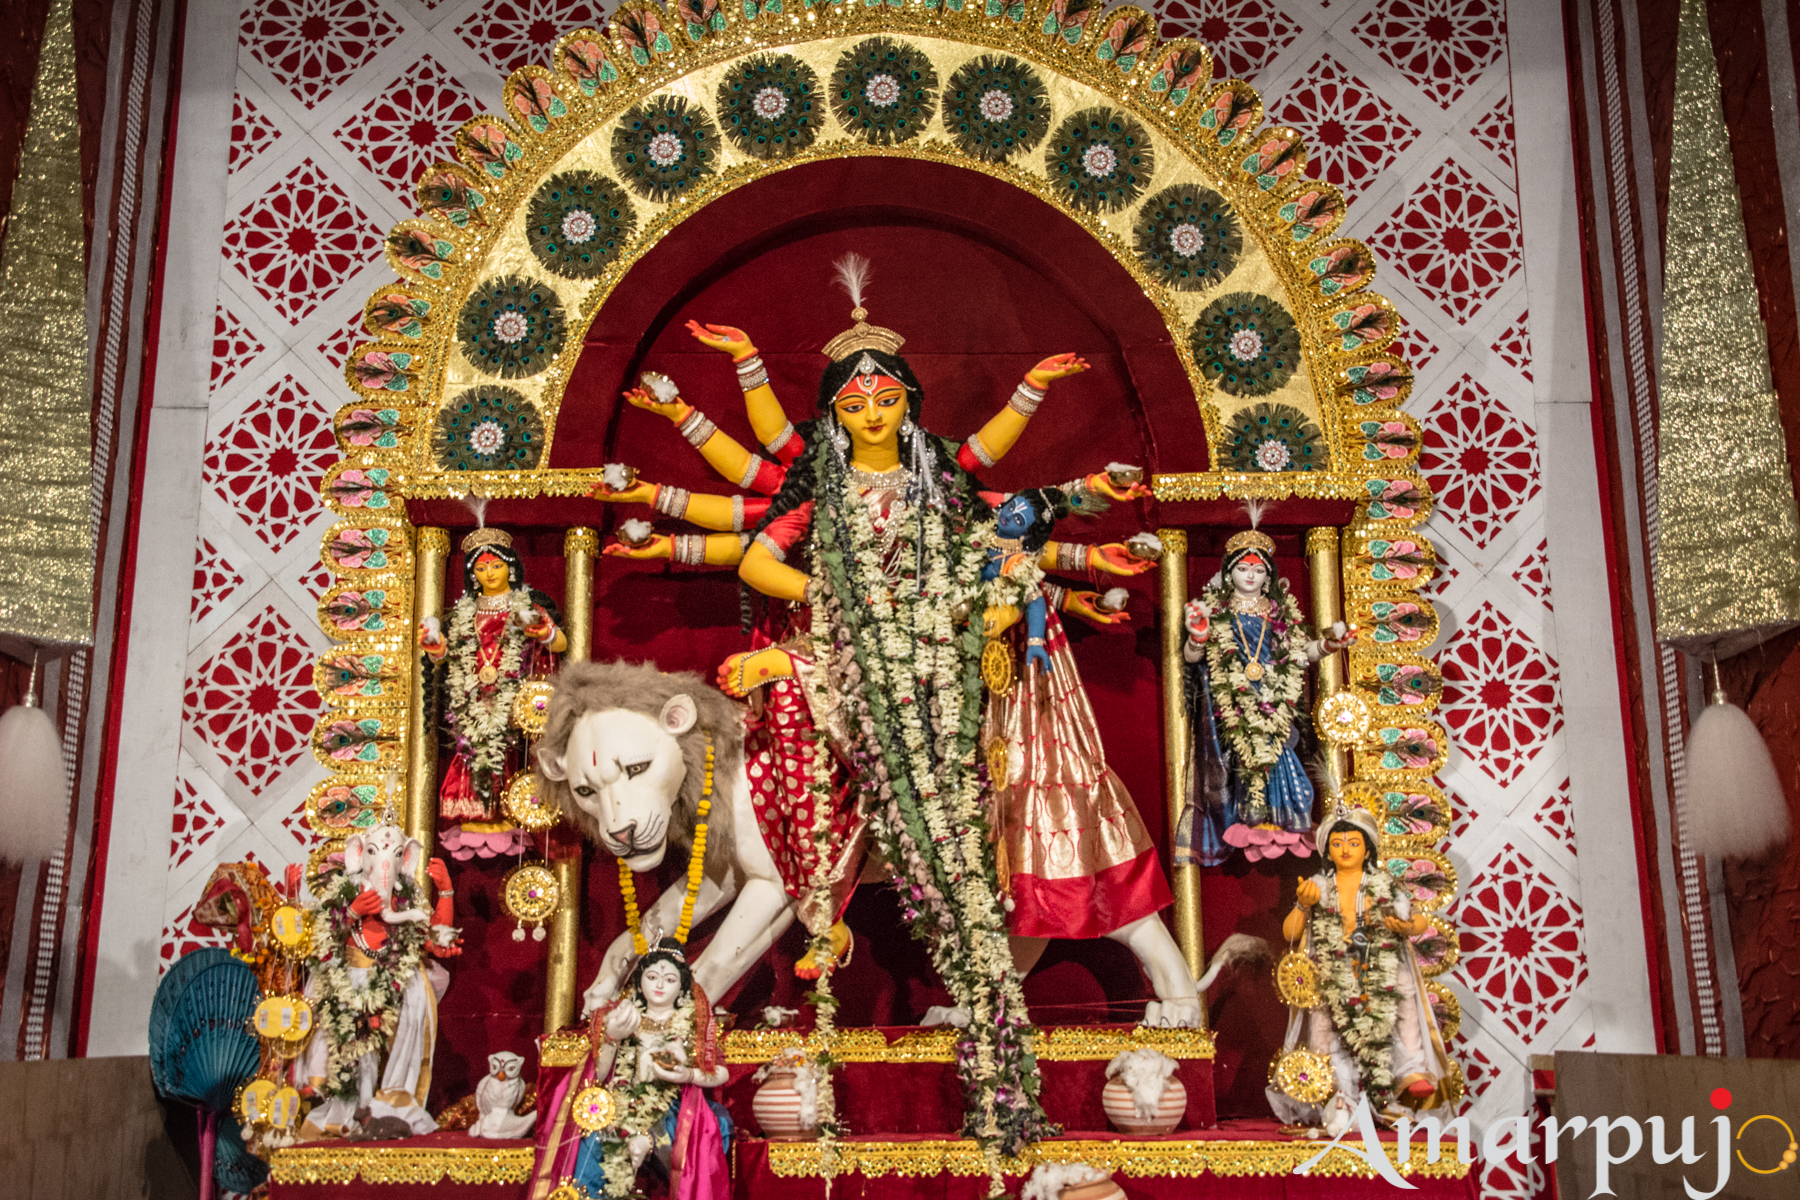 Durga Puja Gallery 2017 - Amarpujo, Durga Puja Festival in Kolkata